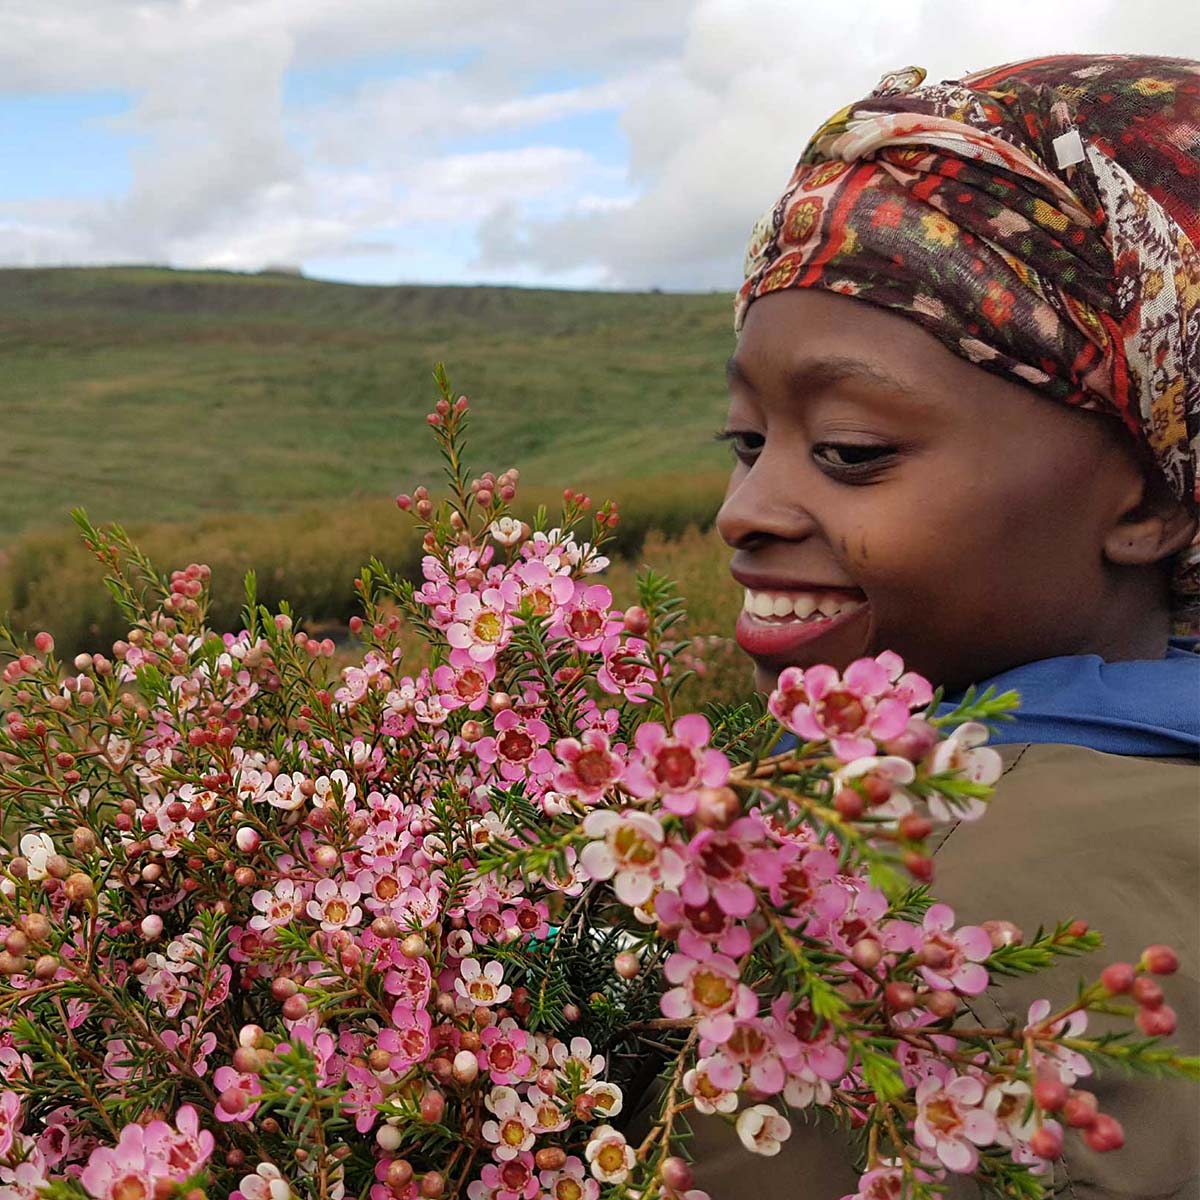 Zuluflora Stunning Wax Flowers feature on Thursd